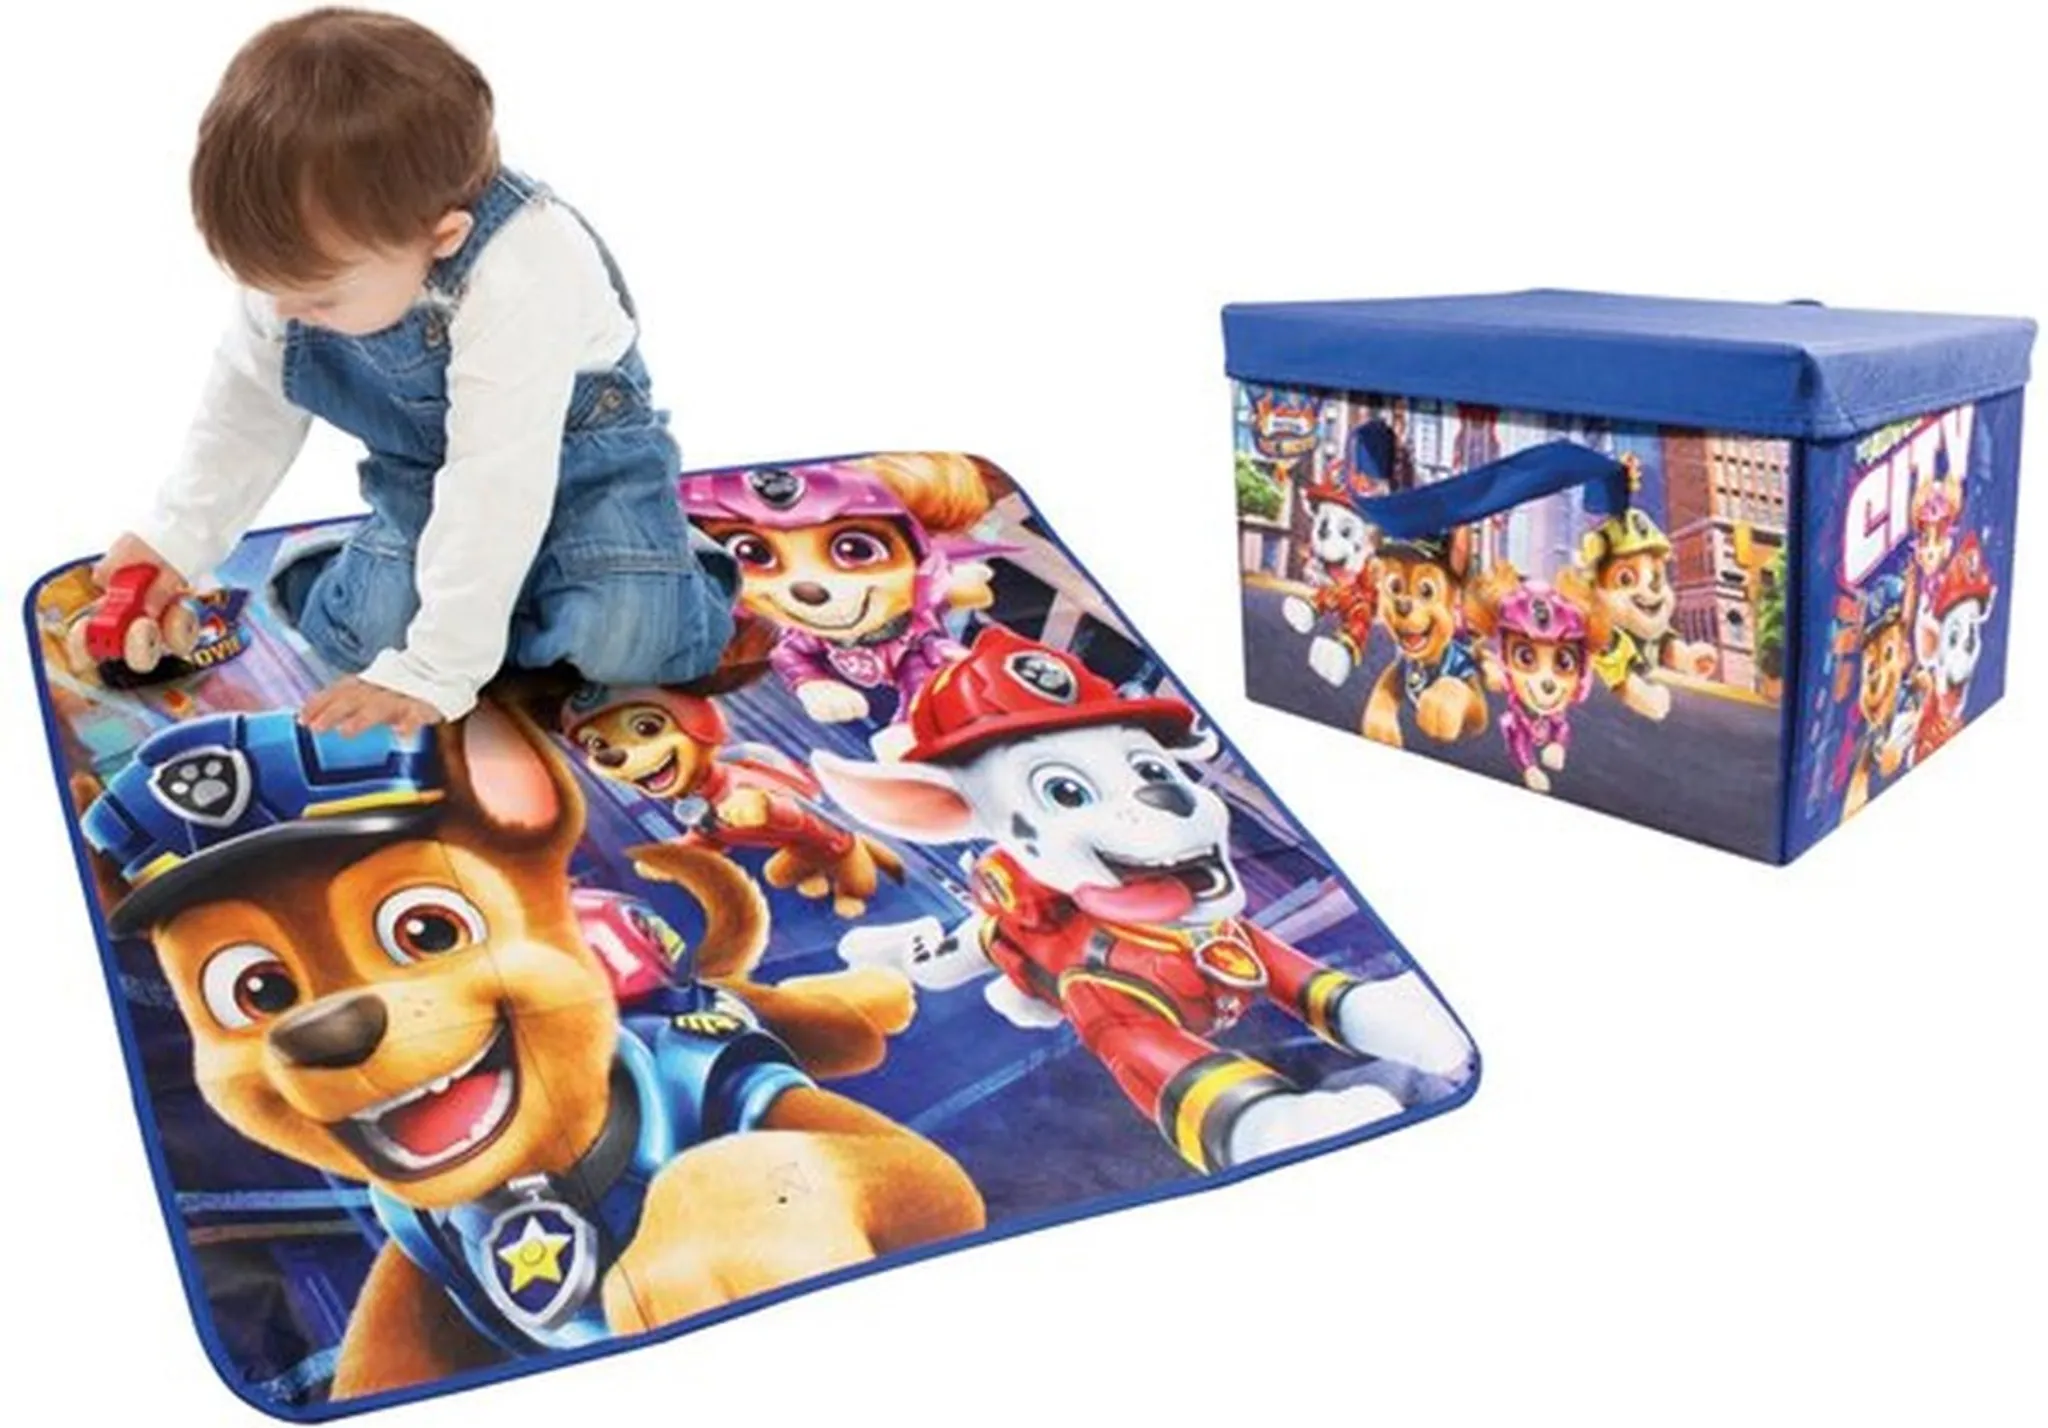 & Kindermöbel Kinderzimmeraccessoires Kinderzimmer-Aufbewahrung 20 x 25 cm Baby & Kind Babyartikel Baby Lunchbox Peppa Pig 